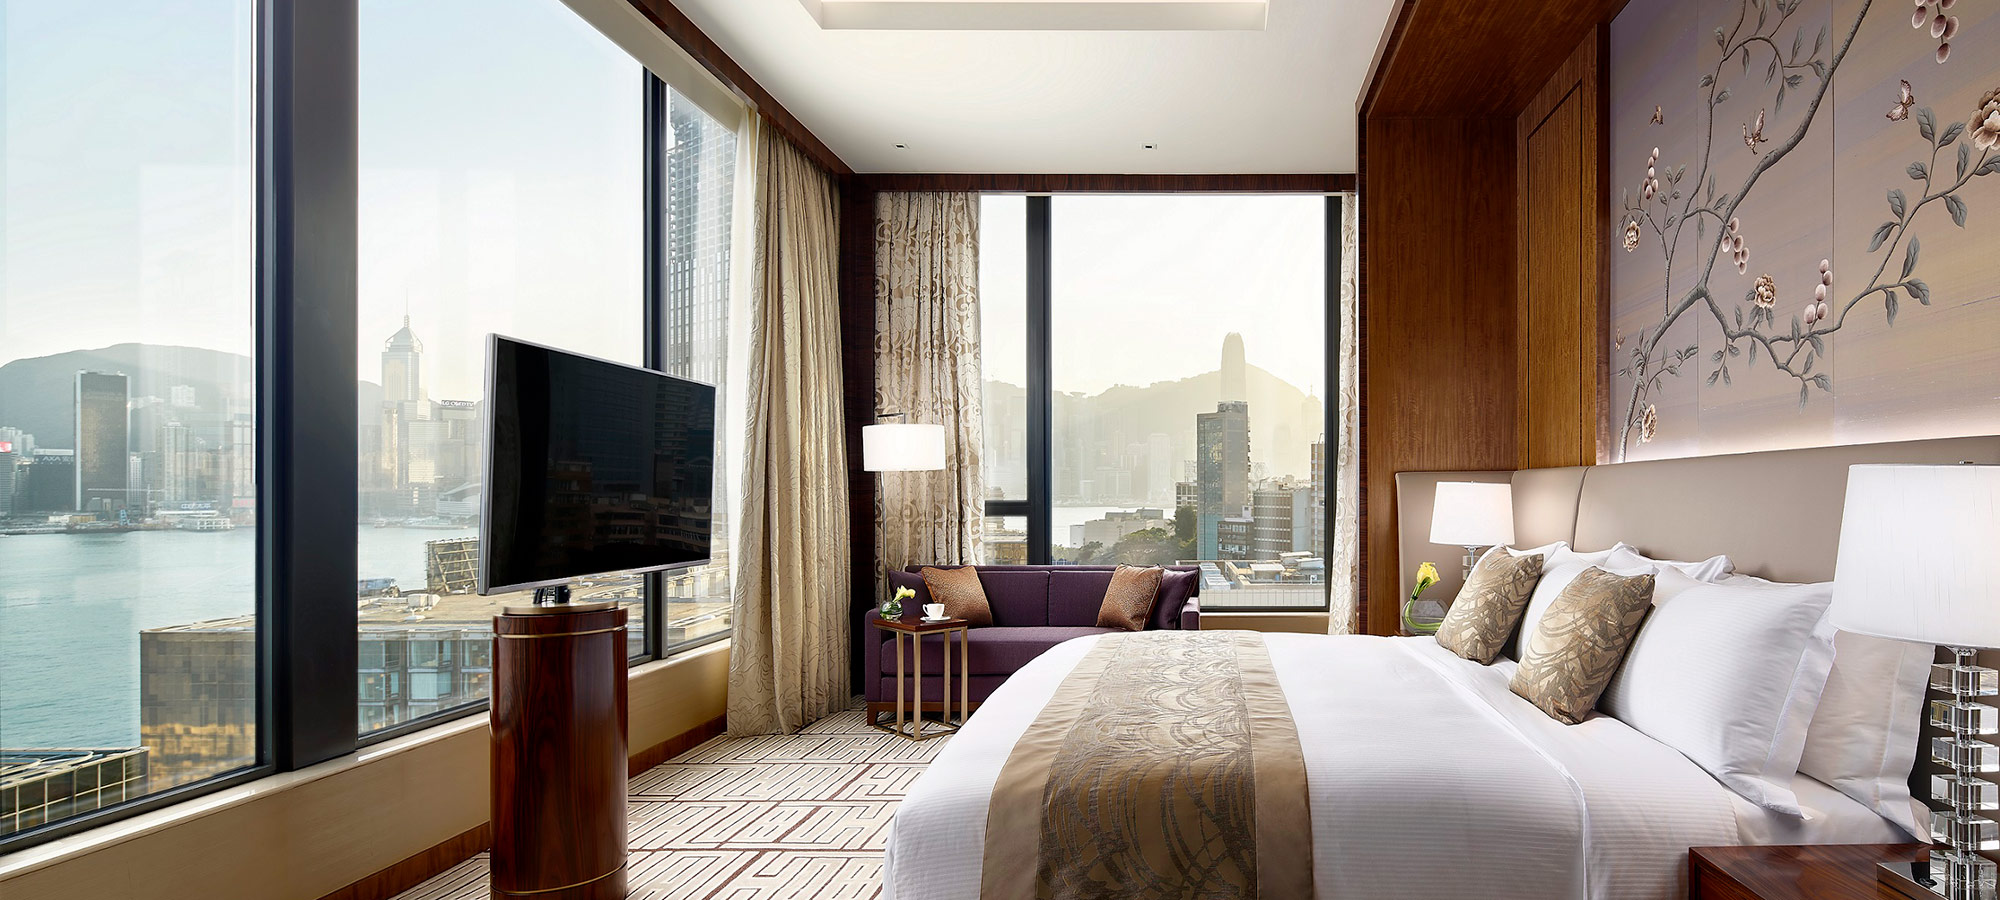 皇室套房 | 香港帝苑酒店 | 预订五星级酒店住宿